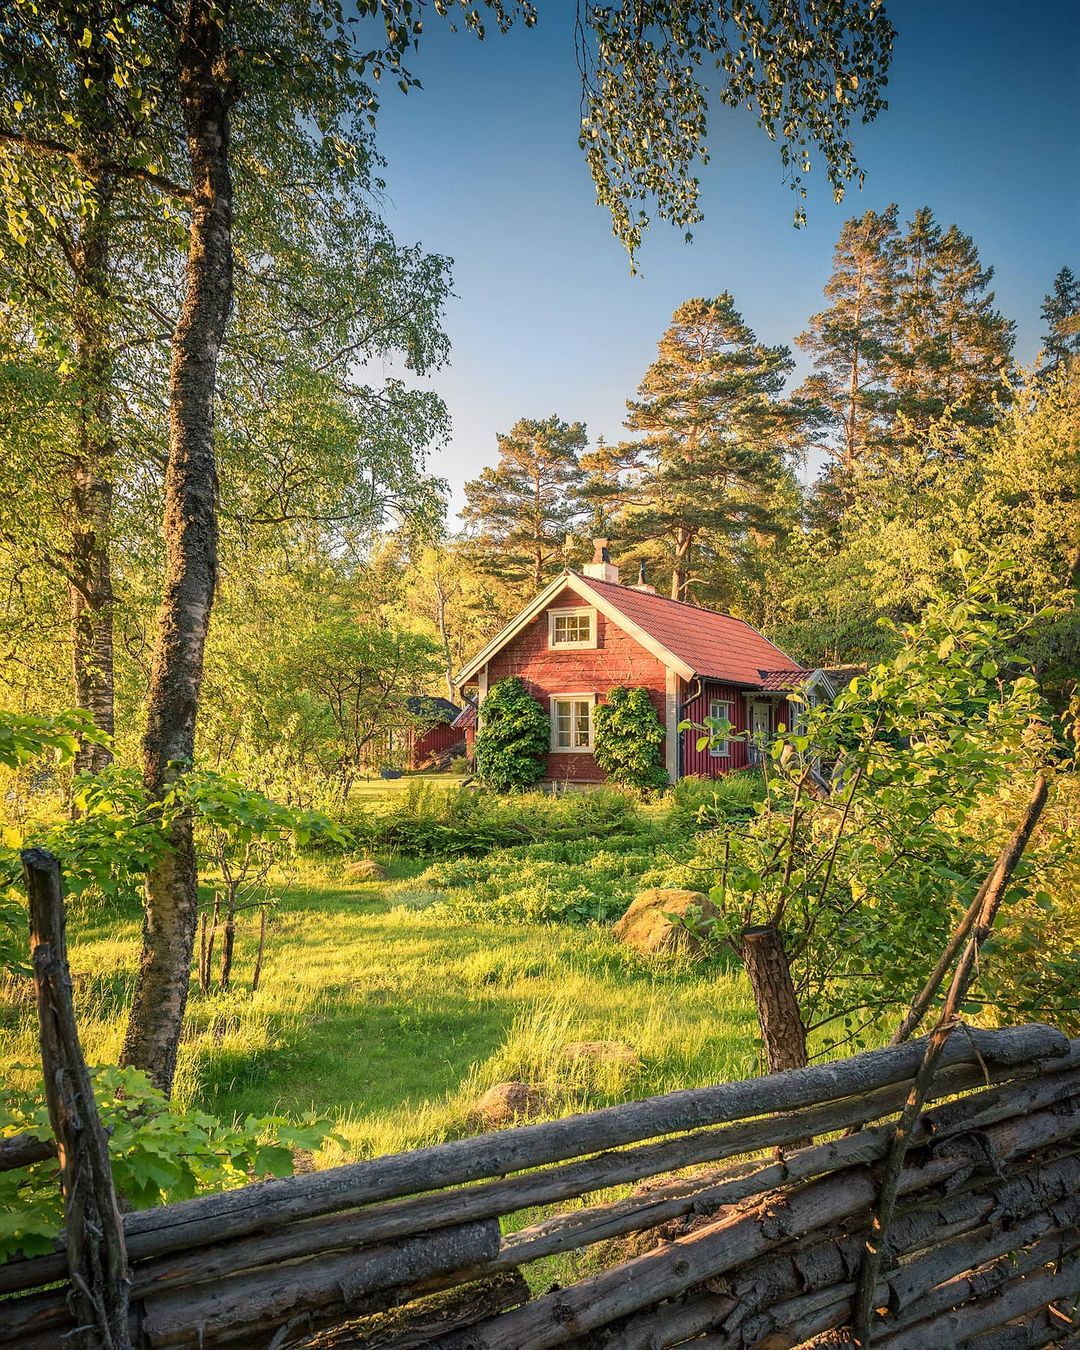 Завораживающие шведские пейзажи, которые переносят в сказку Кристиан, портретной, Читать, подписчиков, почти, в Instagram, делится, работами, Своими, фотографии, природной, пейзажной, основном, Линдстен, фокусируется, Швеция, Эстергетланд, округе, проживающий, художник